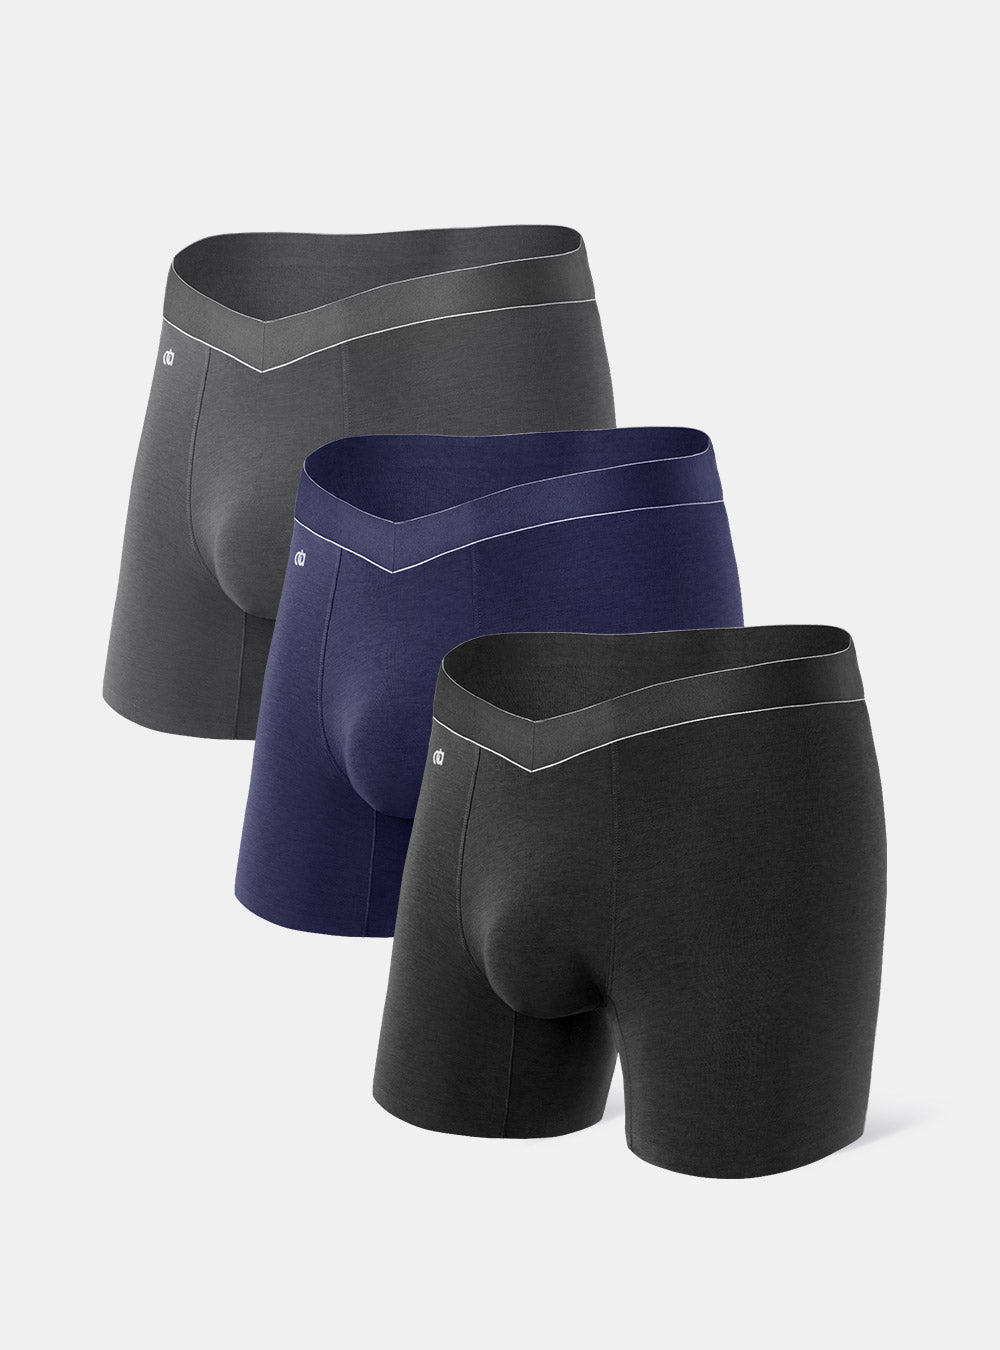 3pcs Men's Underwear With Open Fly, 3d Pouch & Contour Pouch Design Offer  More Comfortable Space, No Constraints